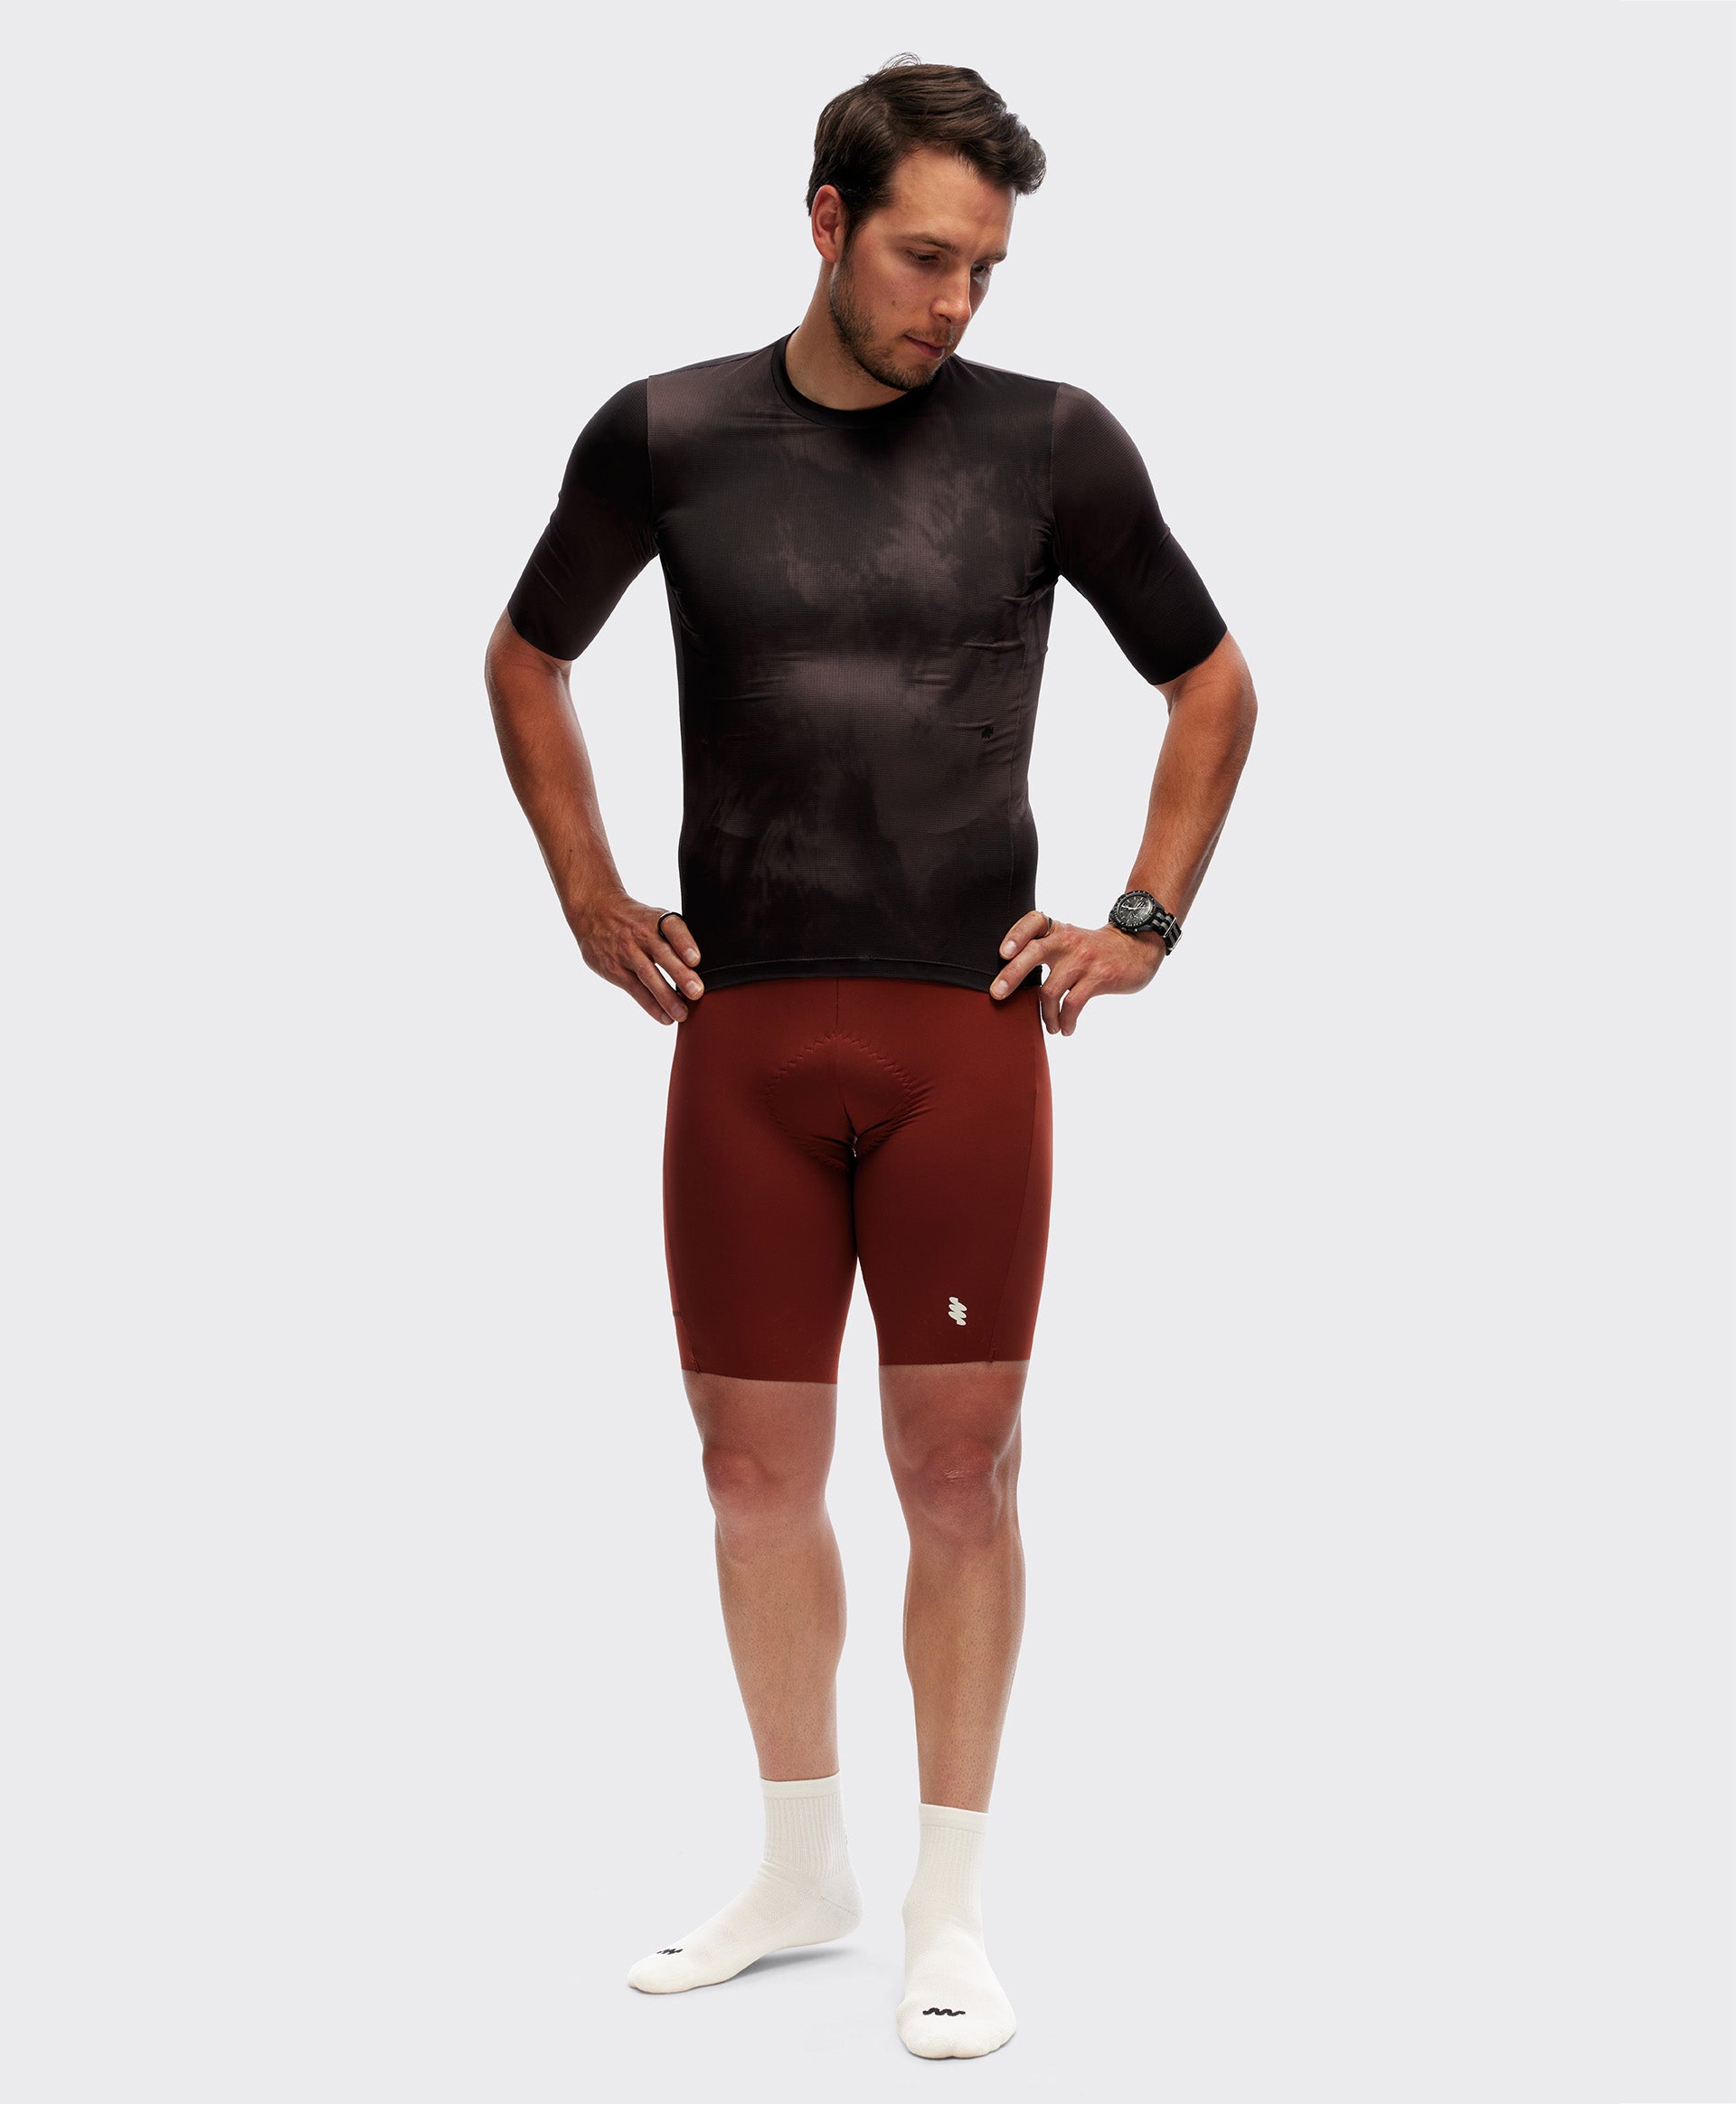 Maillot Cycliste Zipperless - Homme